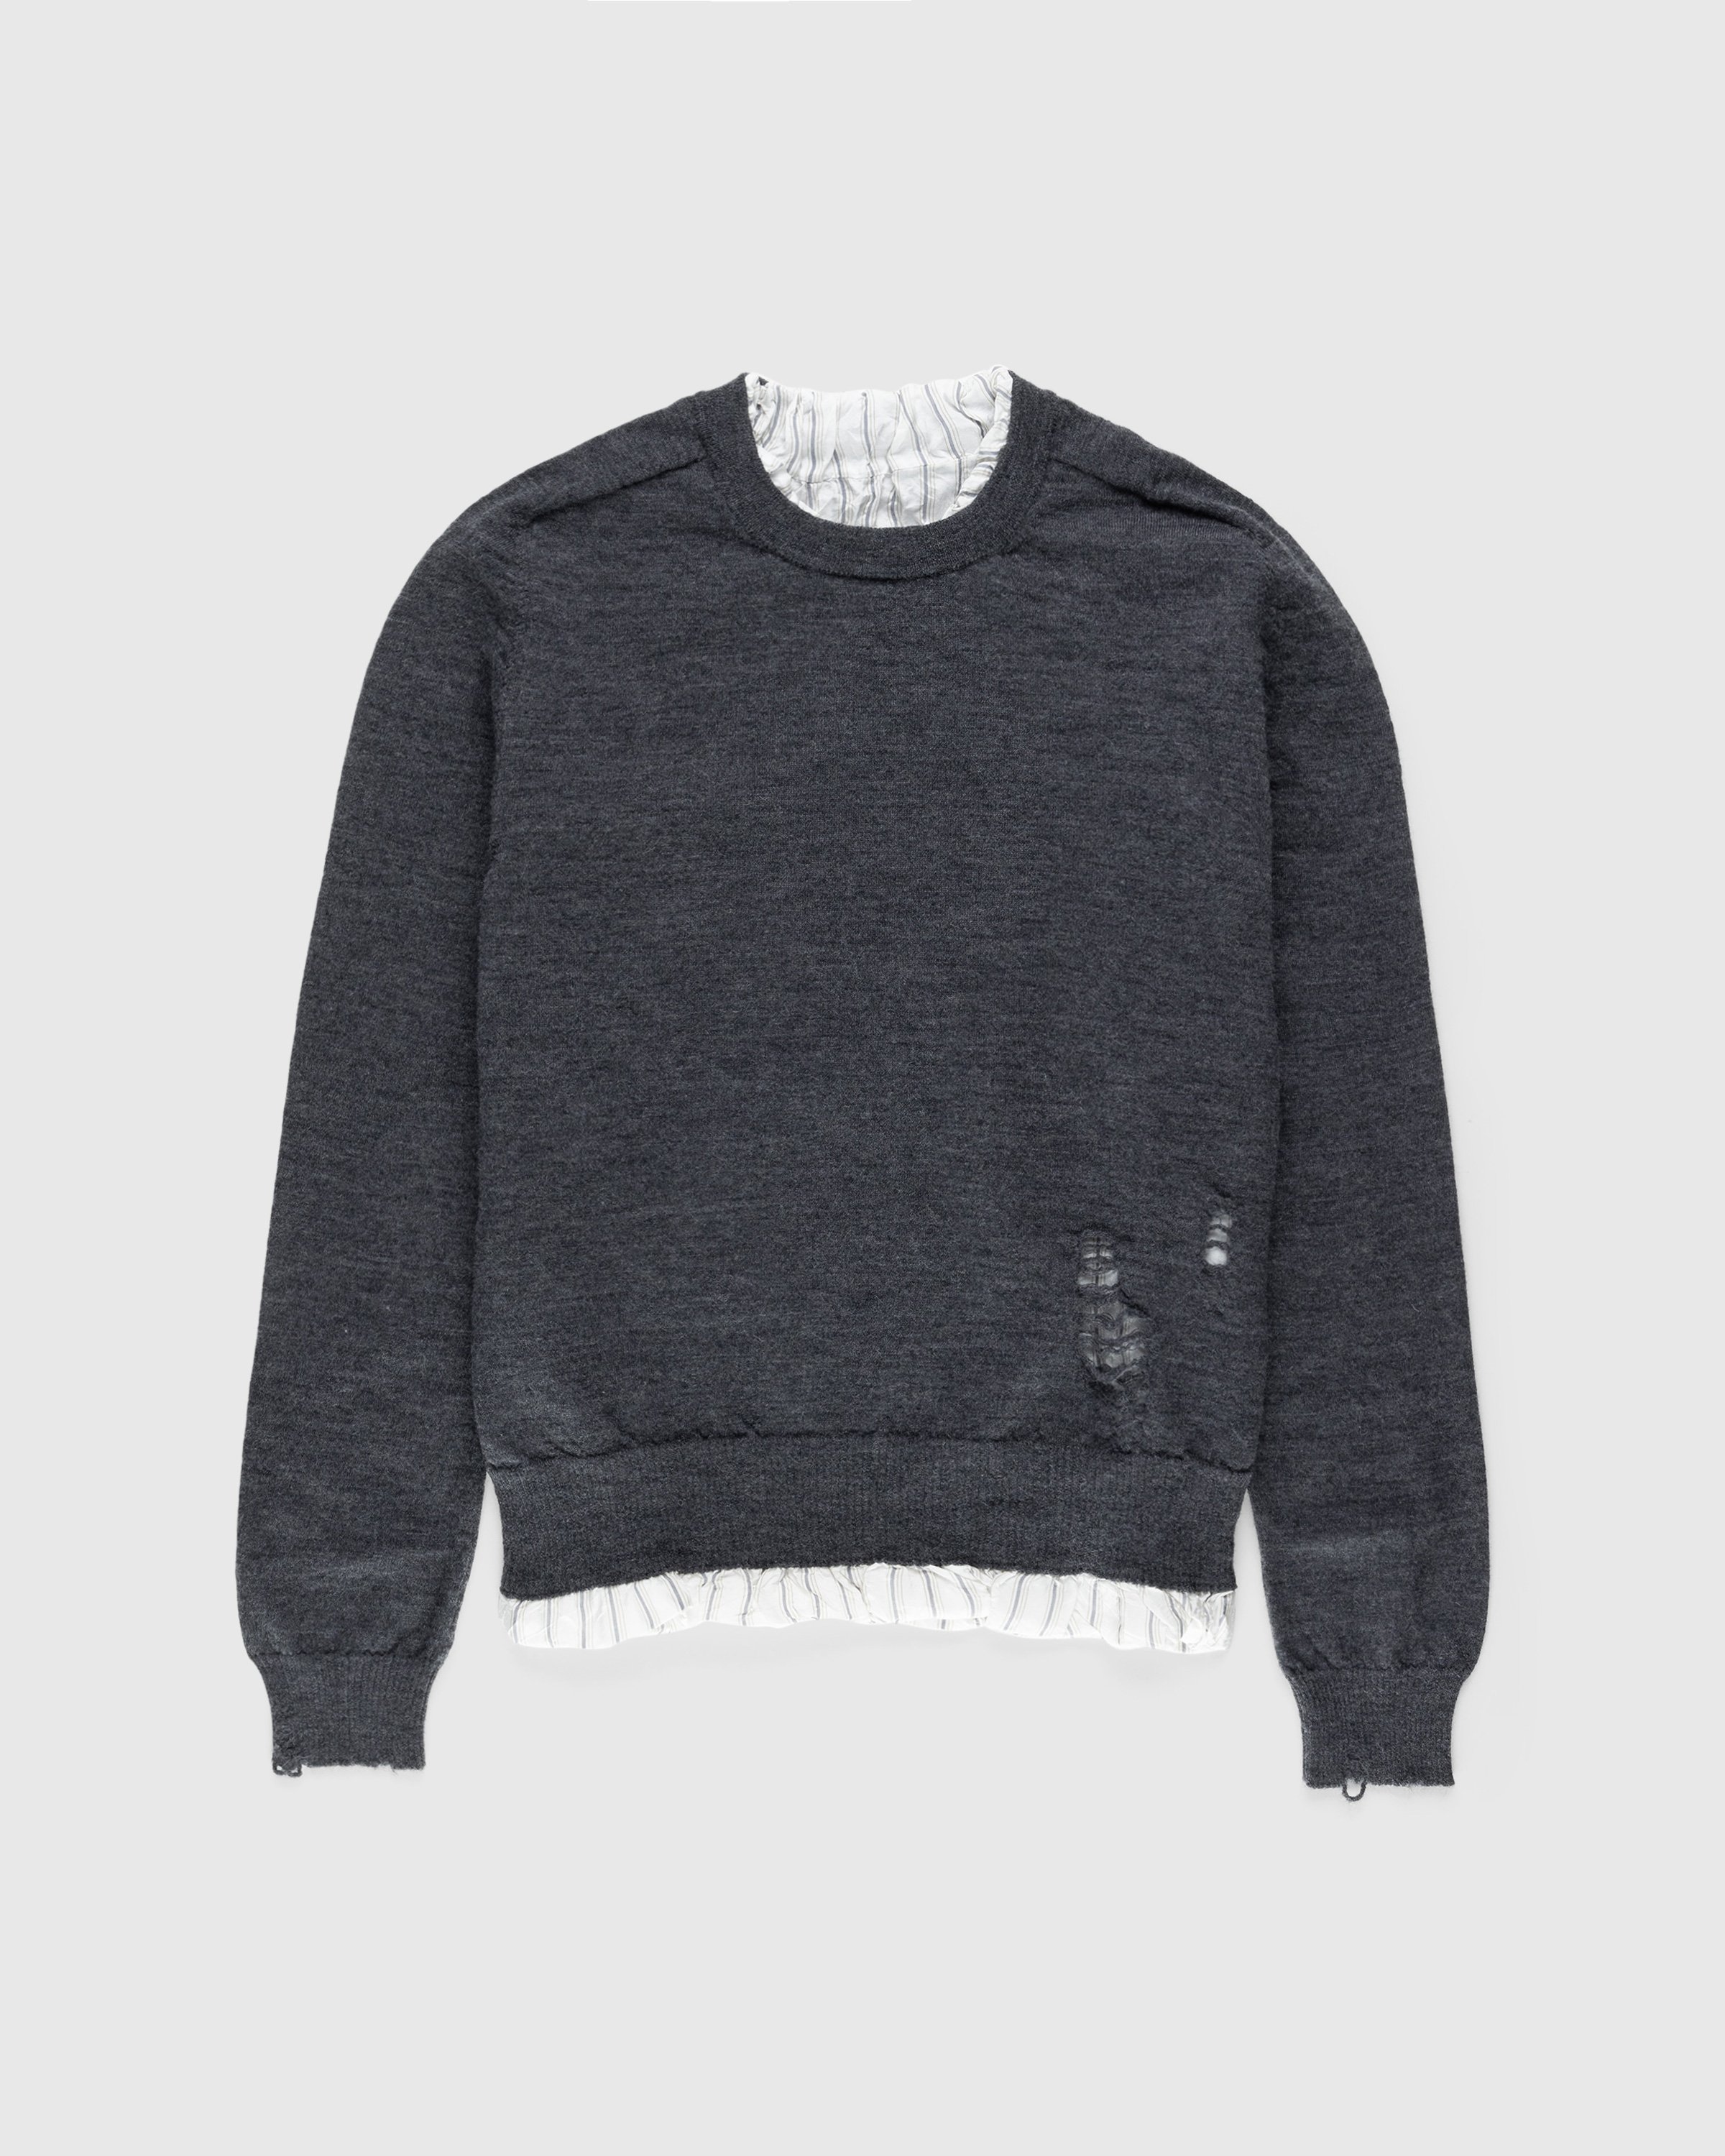 Maison Margiela - Distressed Crewneck Sweater Dark Grey - Clothing - Grey - Image 1